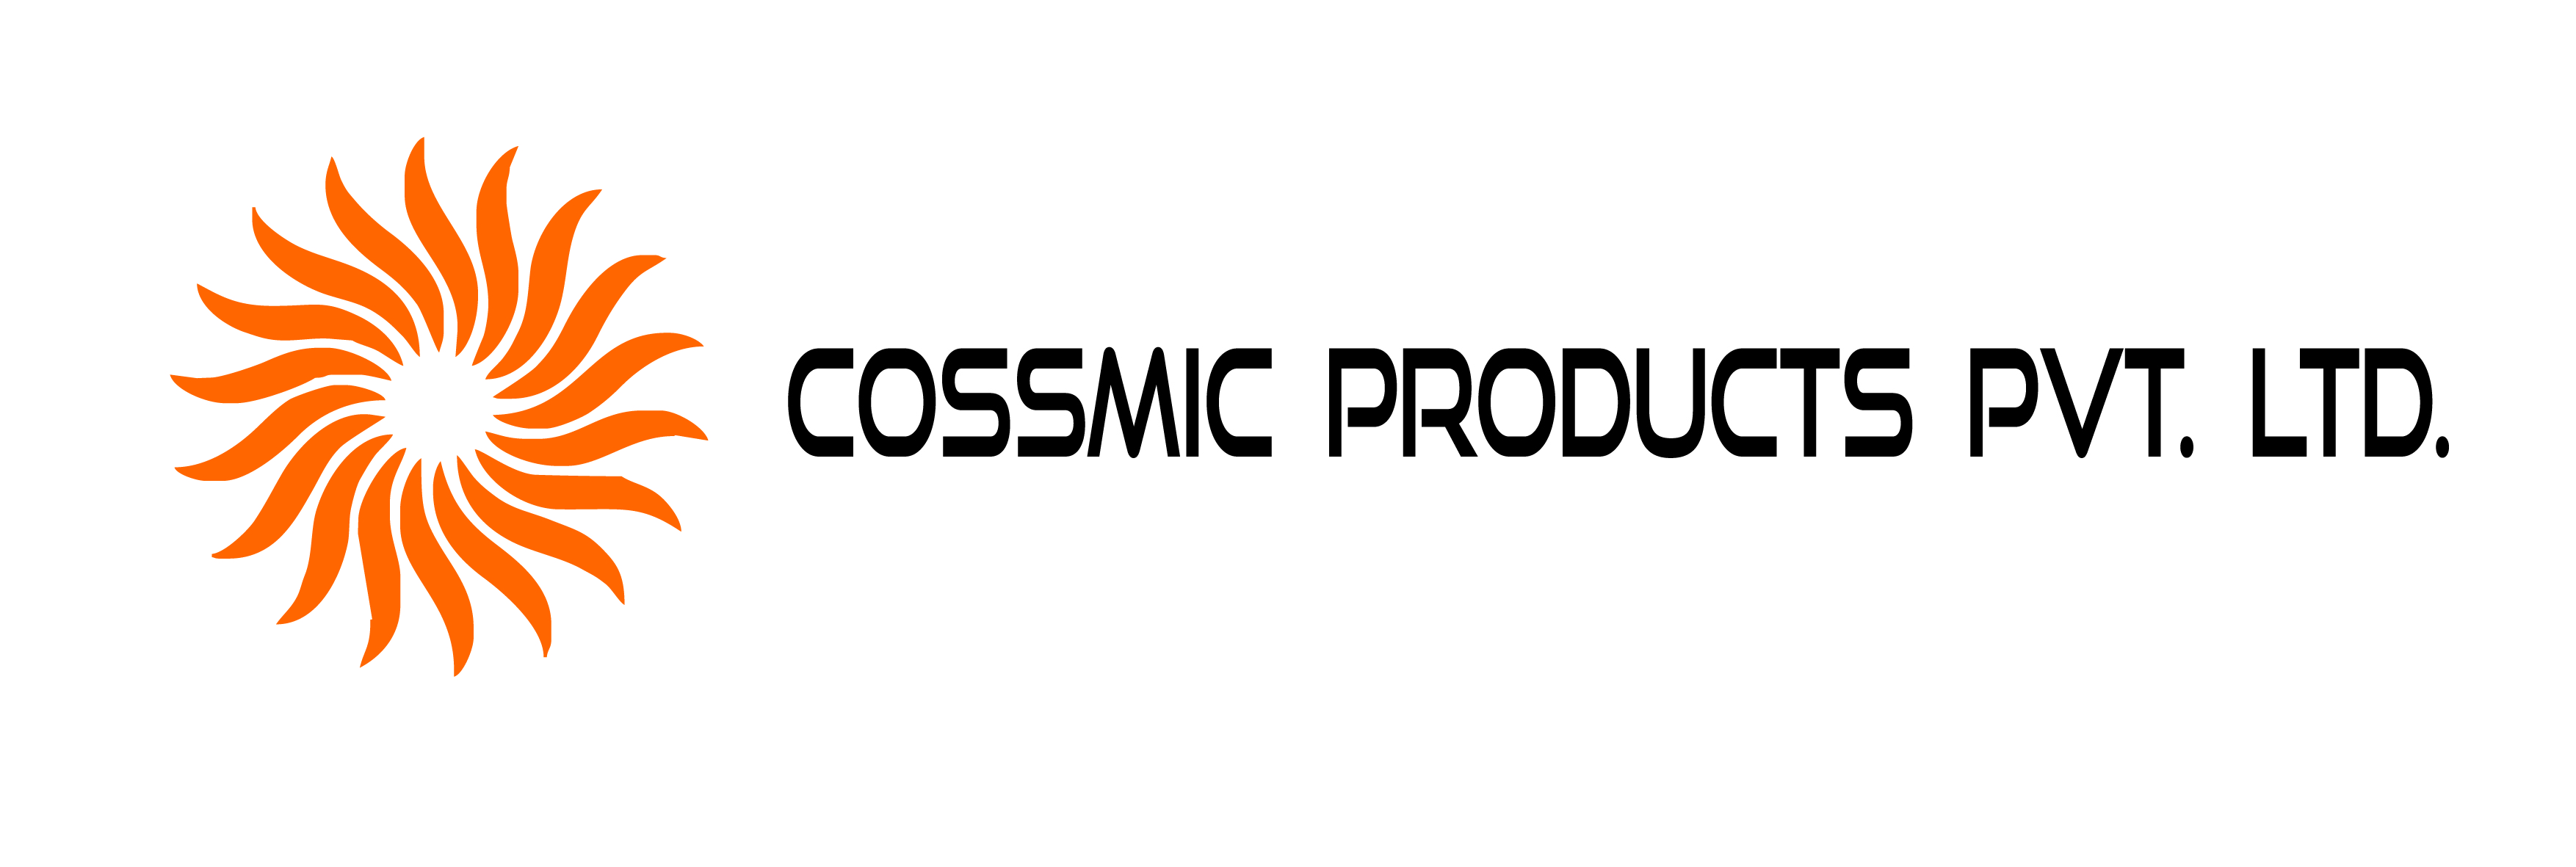 Cossmic logo.cdr